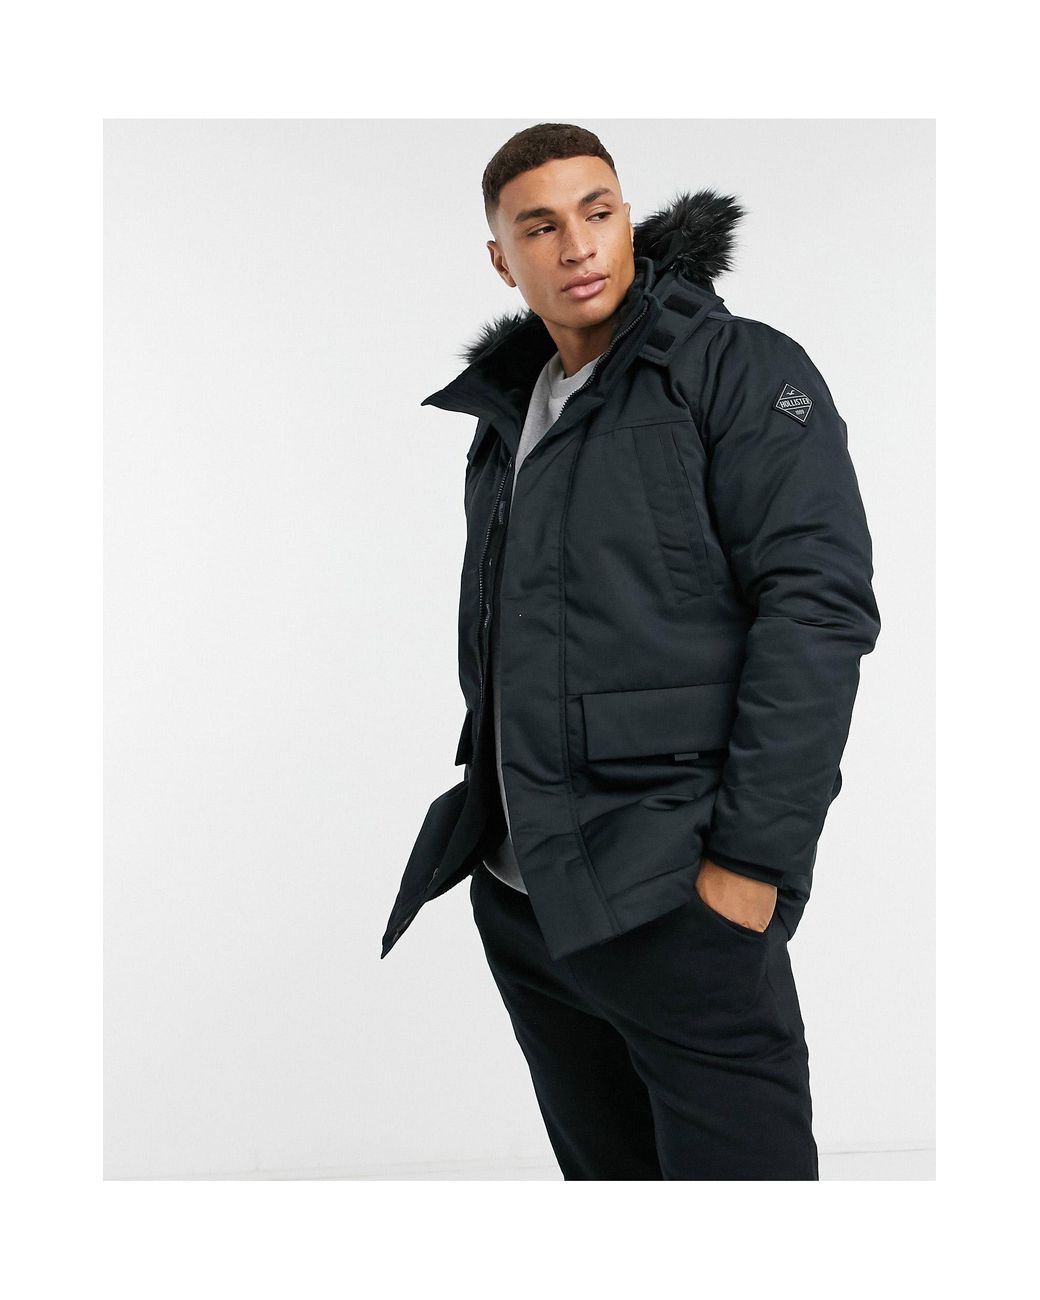 Hollister Faux Fur Lined Hooded Parka Coat in Black for Men